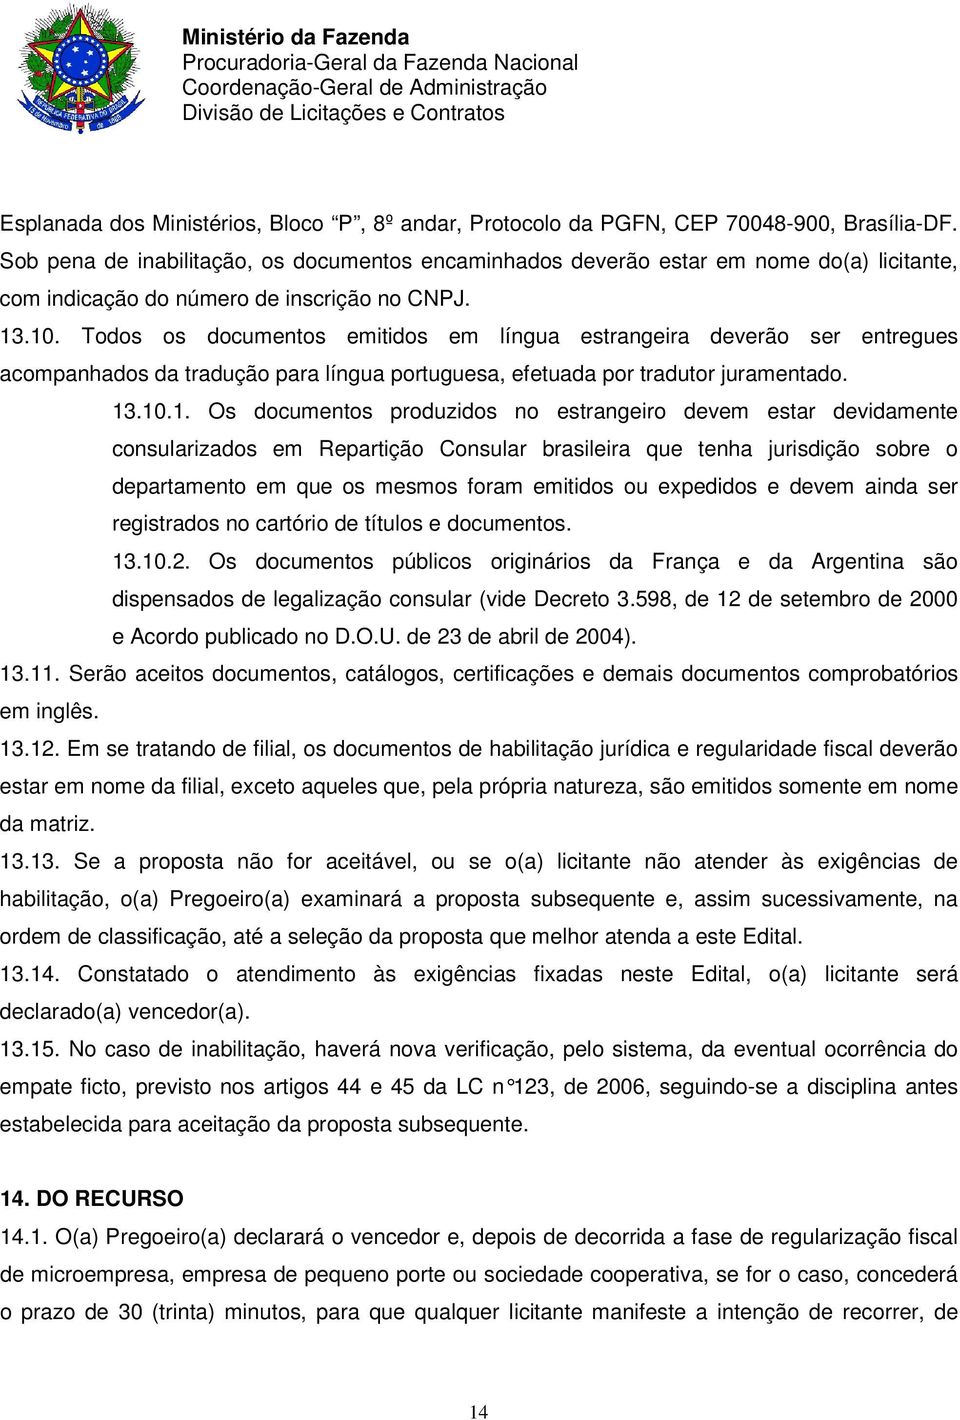 Todos os documentos emitidos em língua estrangeira deverão ser entregues acompanhados da tradução para língua portuguesa, efetuada por tradutor juramentado. 13